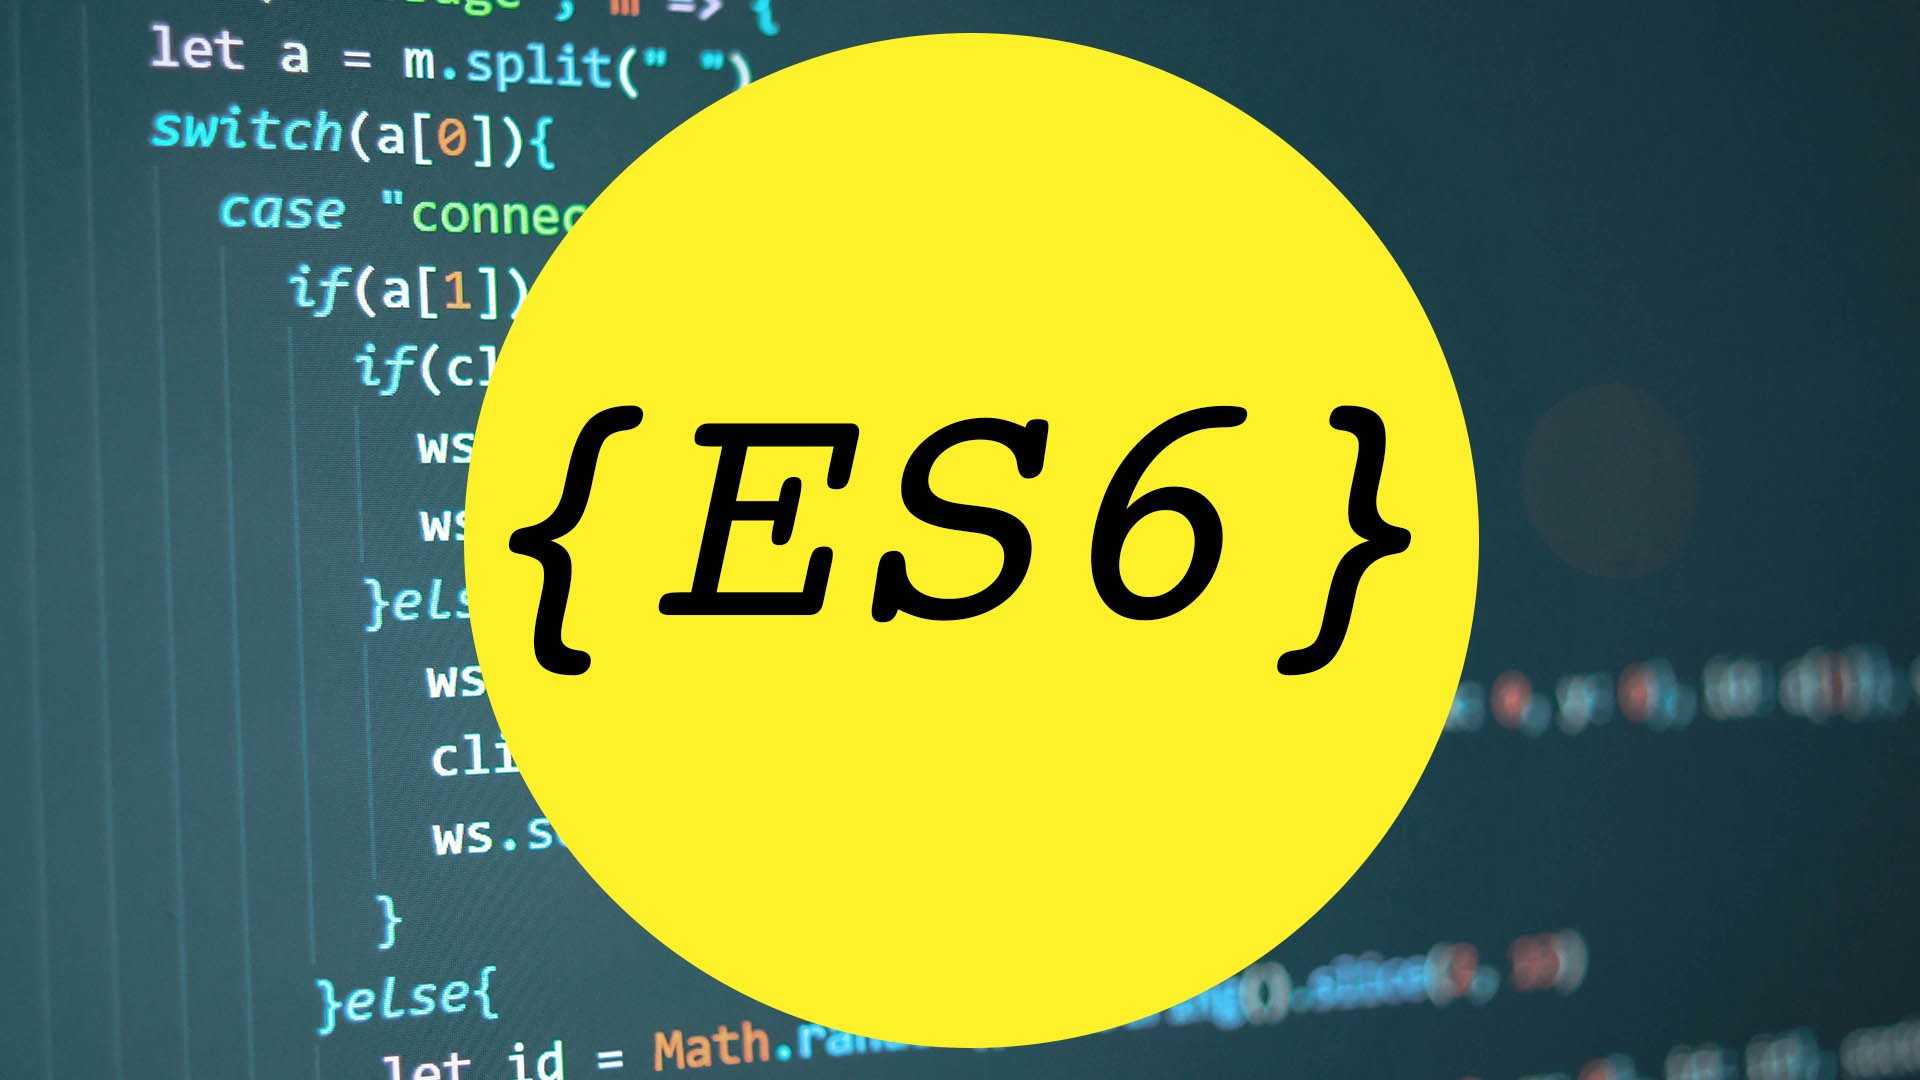 Обновить: ECMAScript 6 ES6 представляет новый тип литералов, а именно шаблонные литералы  У них много